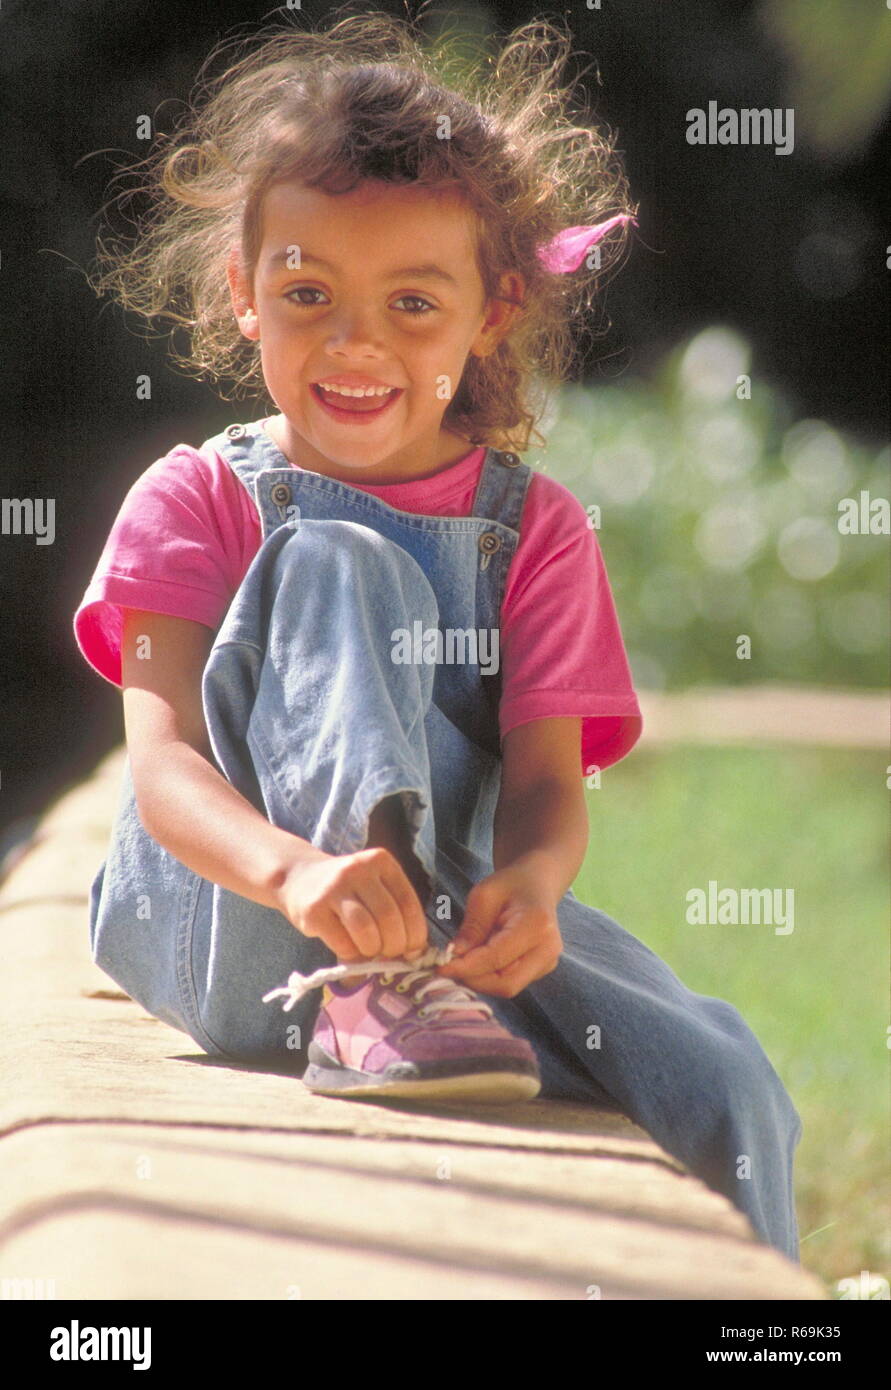 Parkszene, Ganzfigur, Maedchen mit langen braunen Haaren, 6 Jahre, bekleidet mit Jeans und pink farbenem T-Shirt, sitzt auf einer Steinmauer und bindet sich ihren Schuh zu Stock Photo